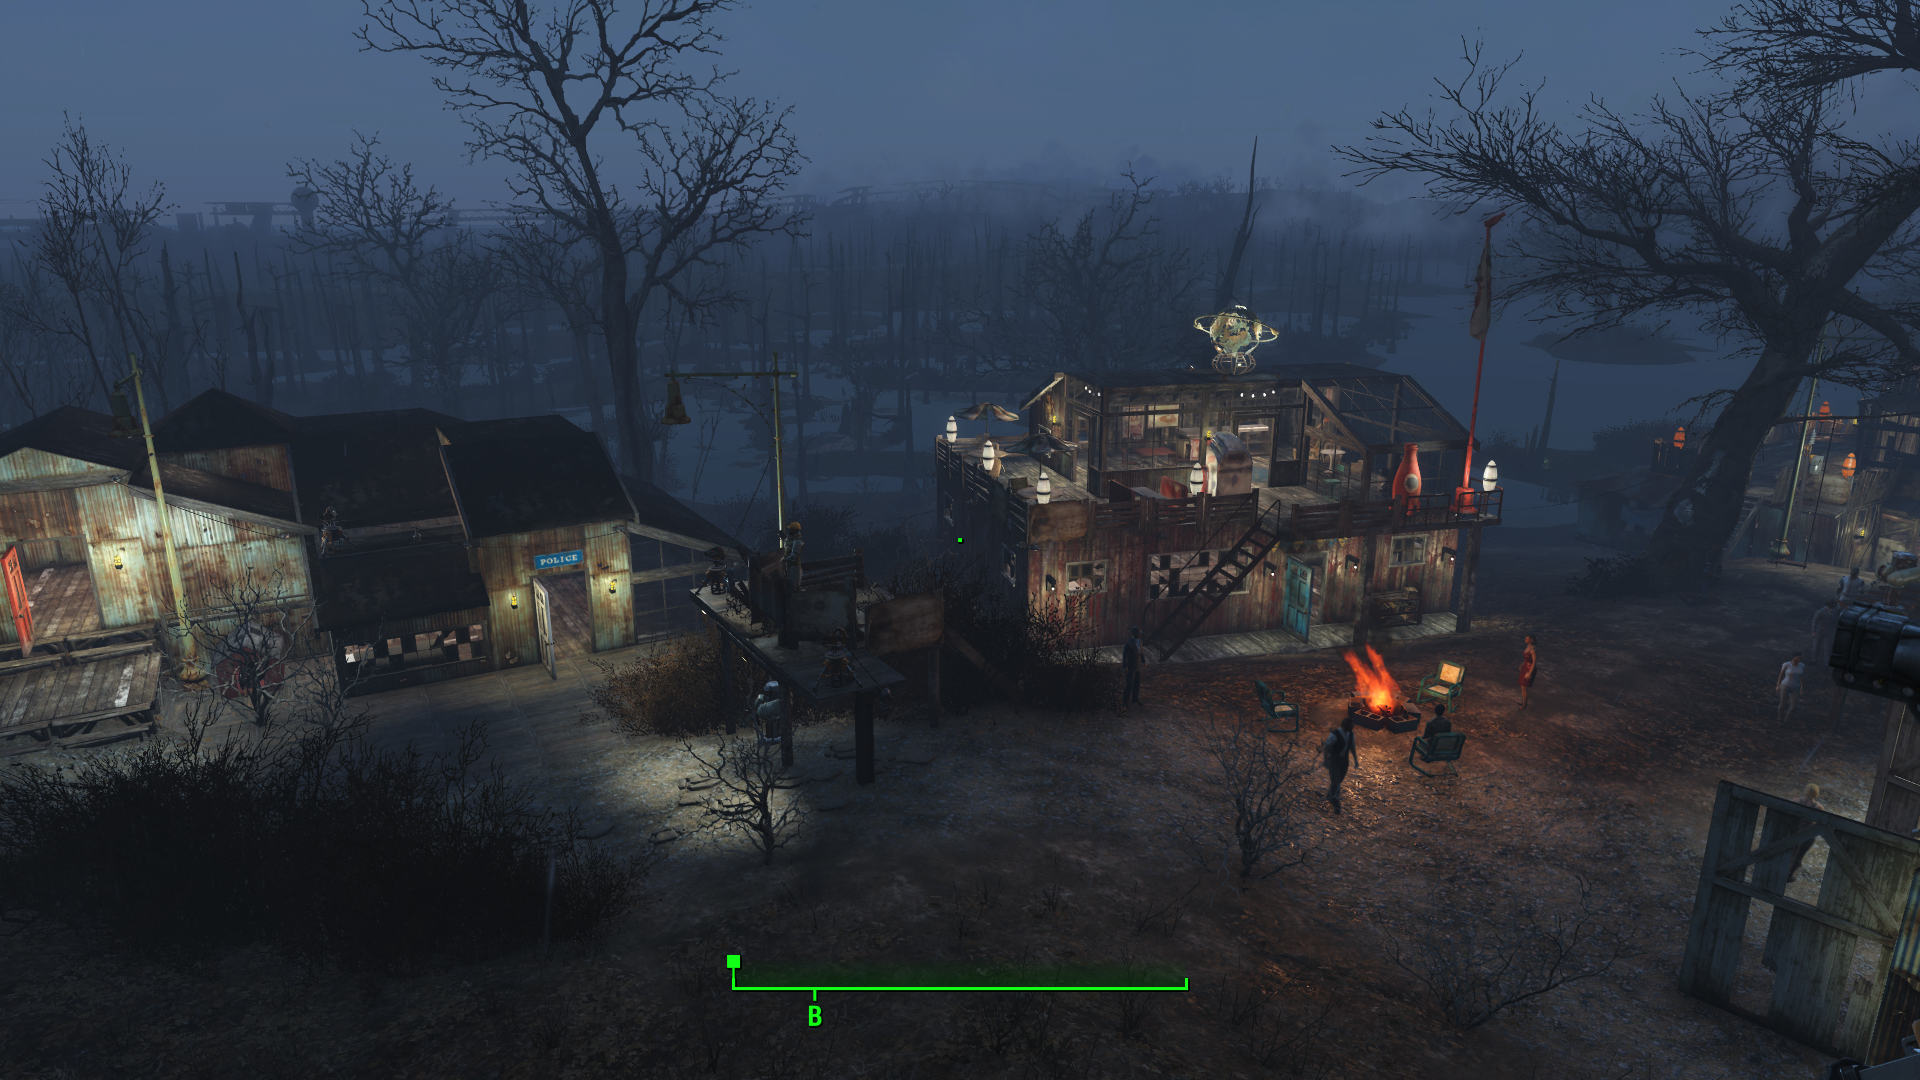 Fallout 4 Screenshot 2017.11.26 - 12.26.04.17